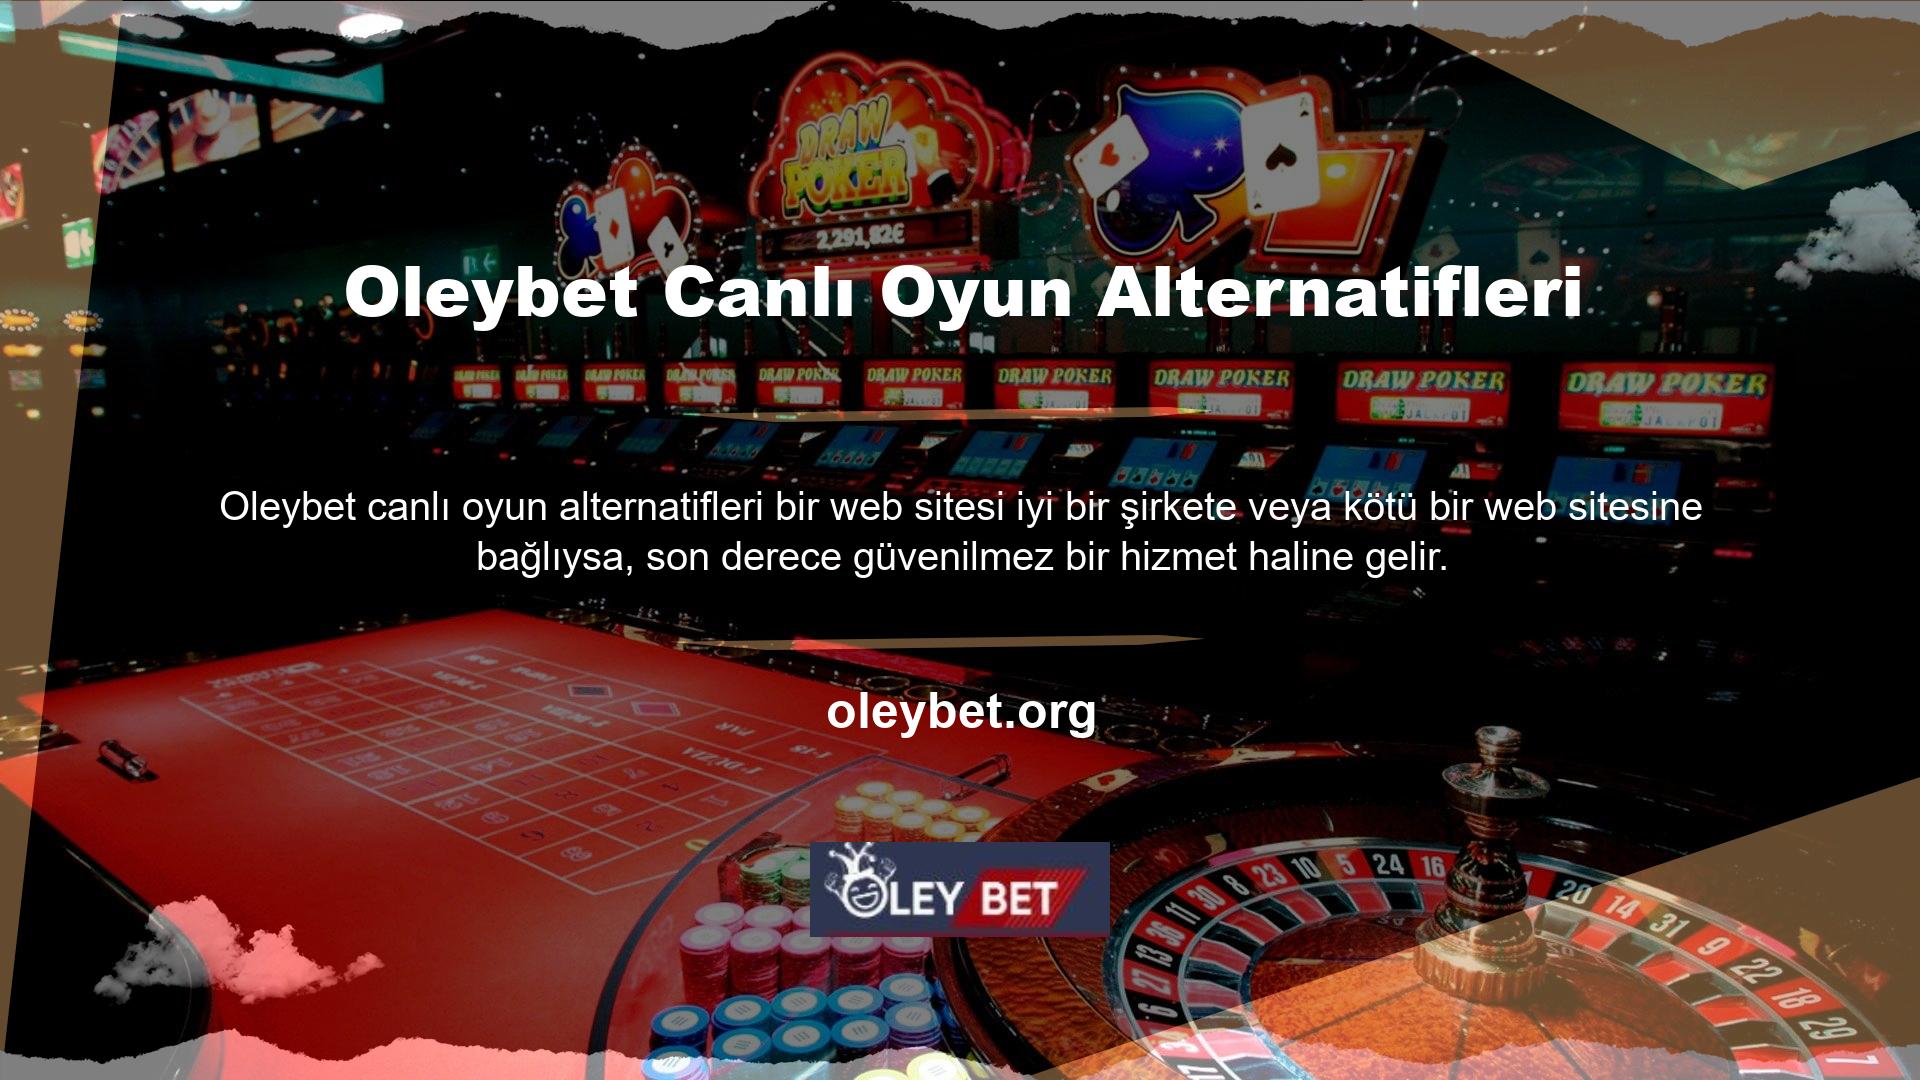 Oleybet, canlı oyun sağlayıcıları da dahil olmak üzere tüm sektörlerdeki en iyi altyapı ve oyun sağlayıcılarıyla çalışmaktadır